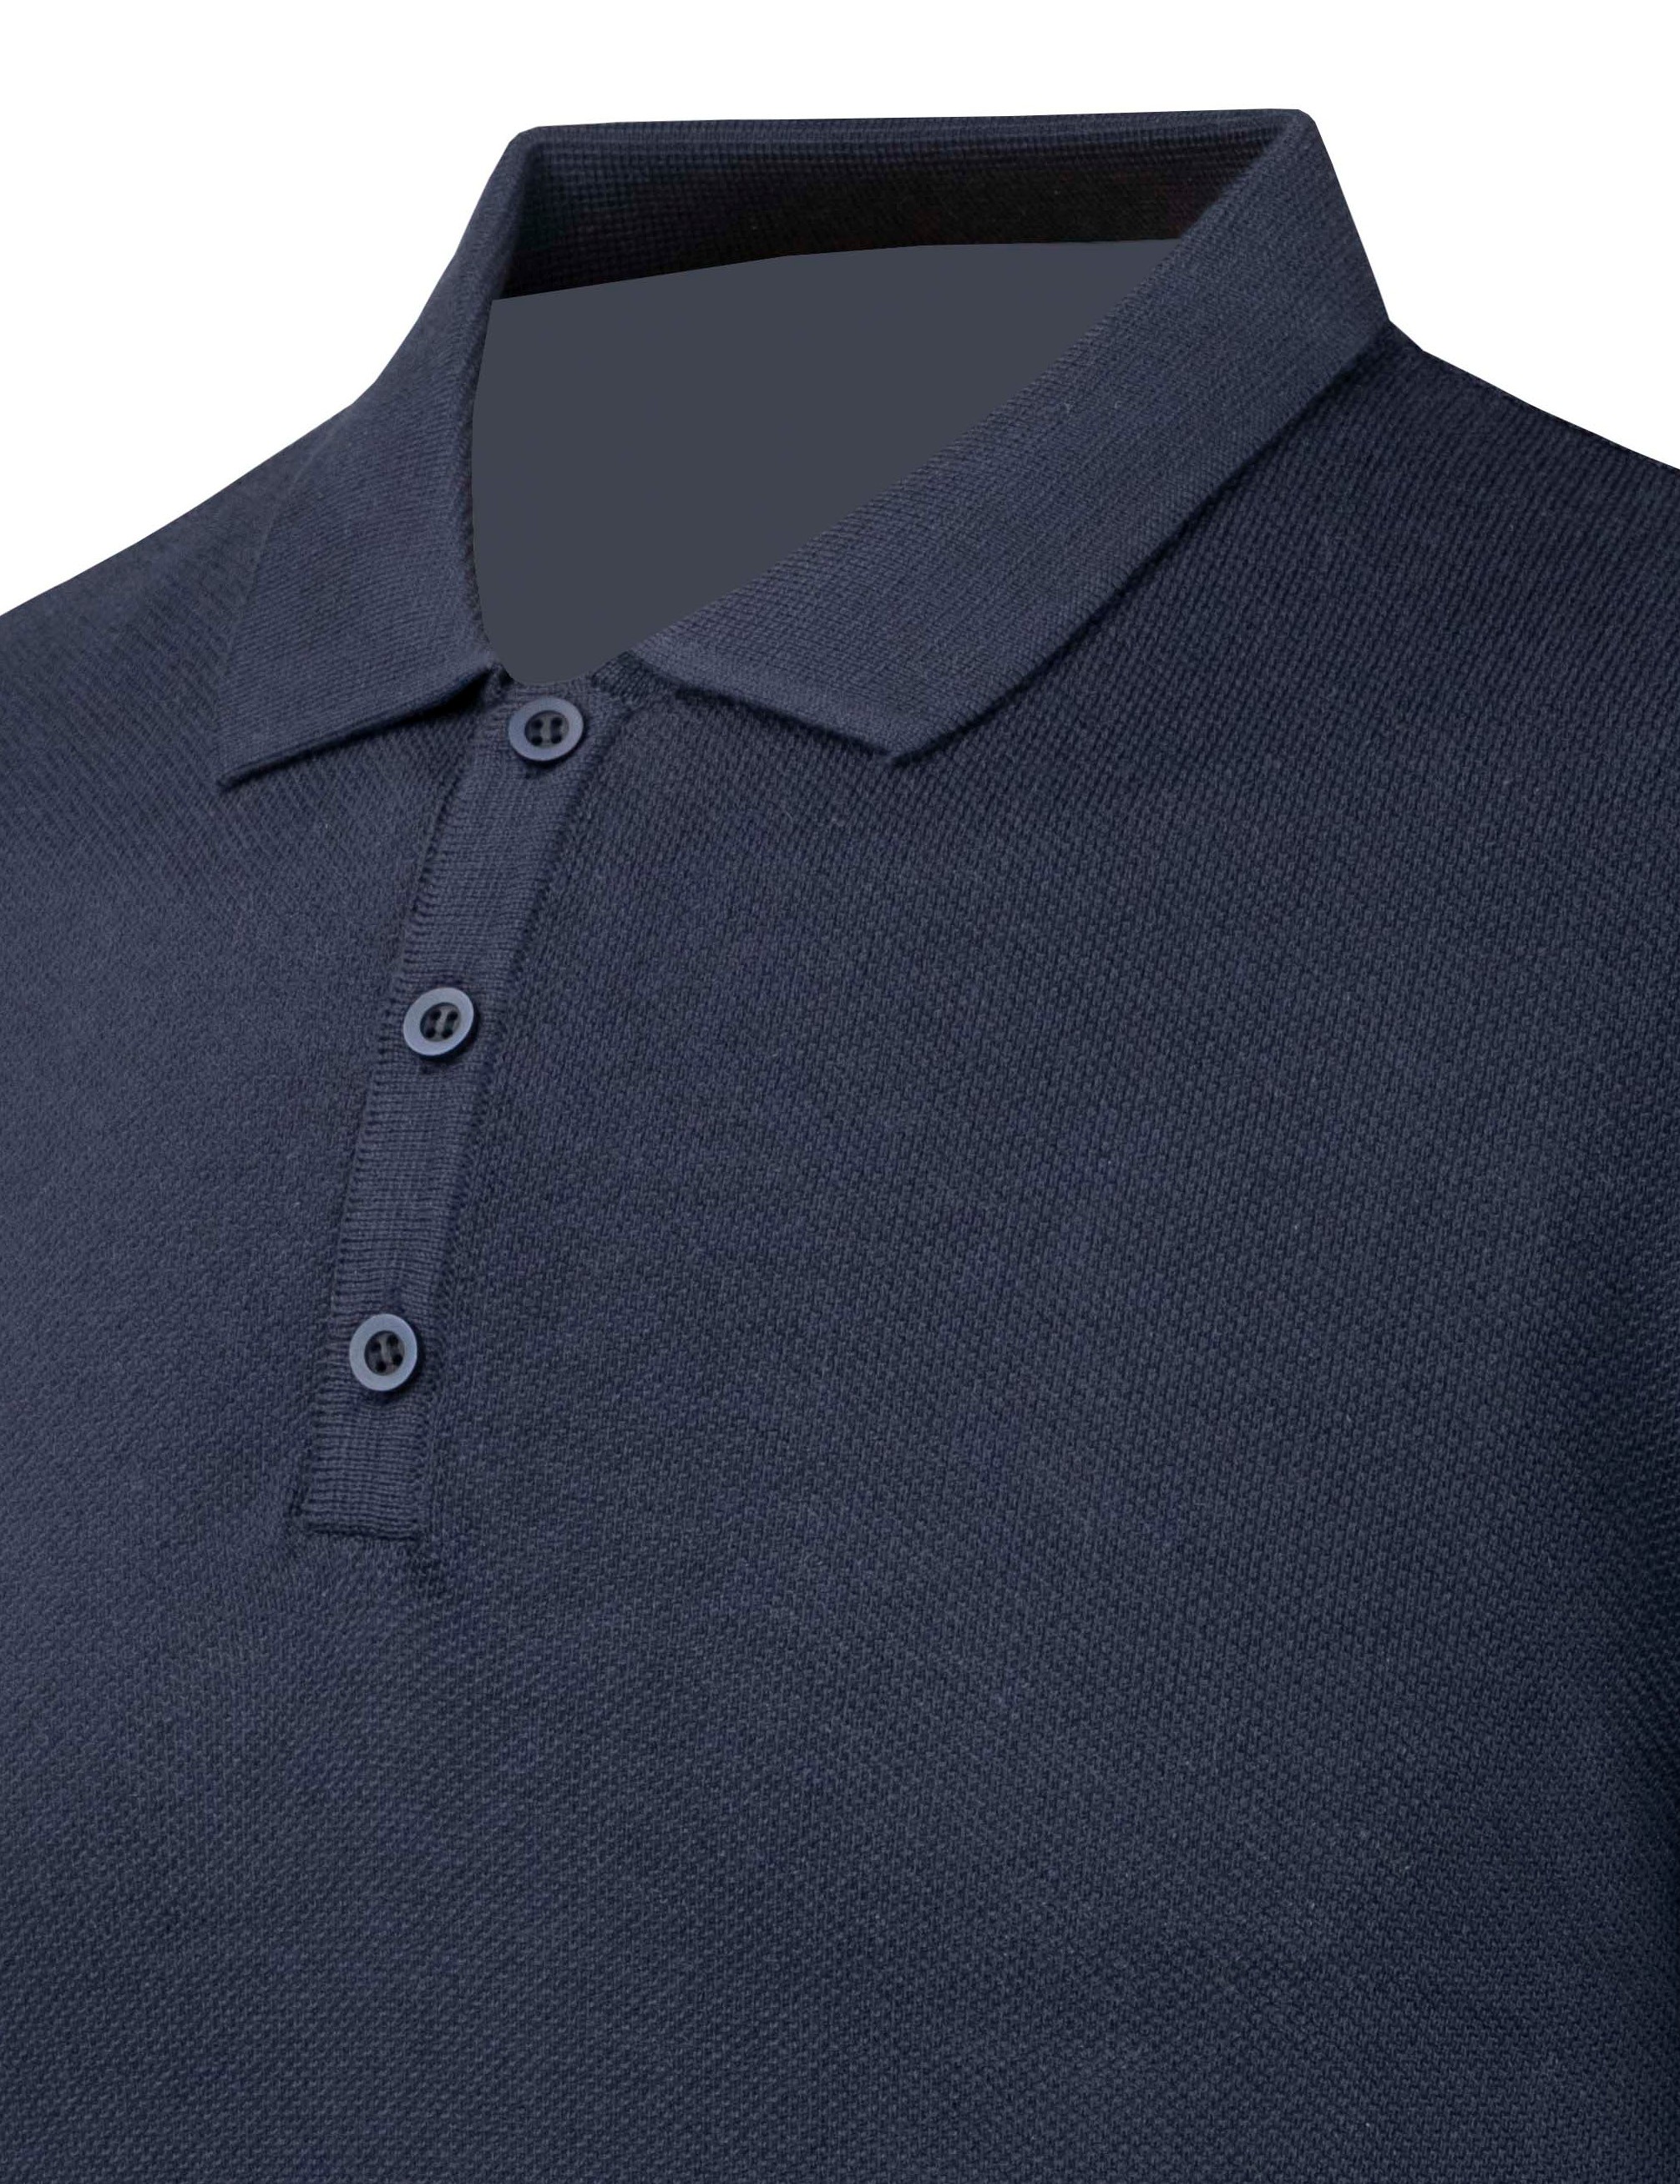 Erkek Yazlık Triko Tişört Kıvrılmaz Polo Yaka Regular Kalıp - LACİVERT